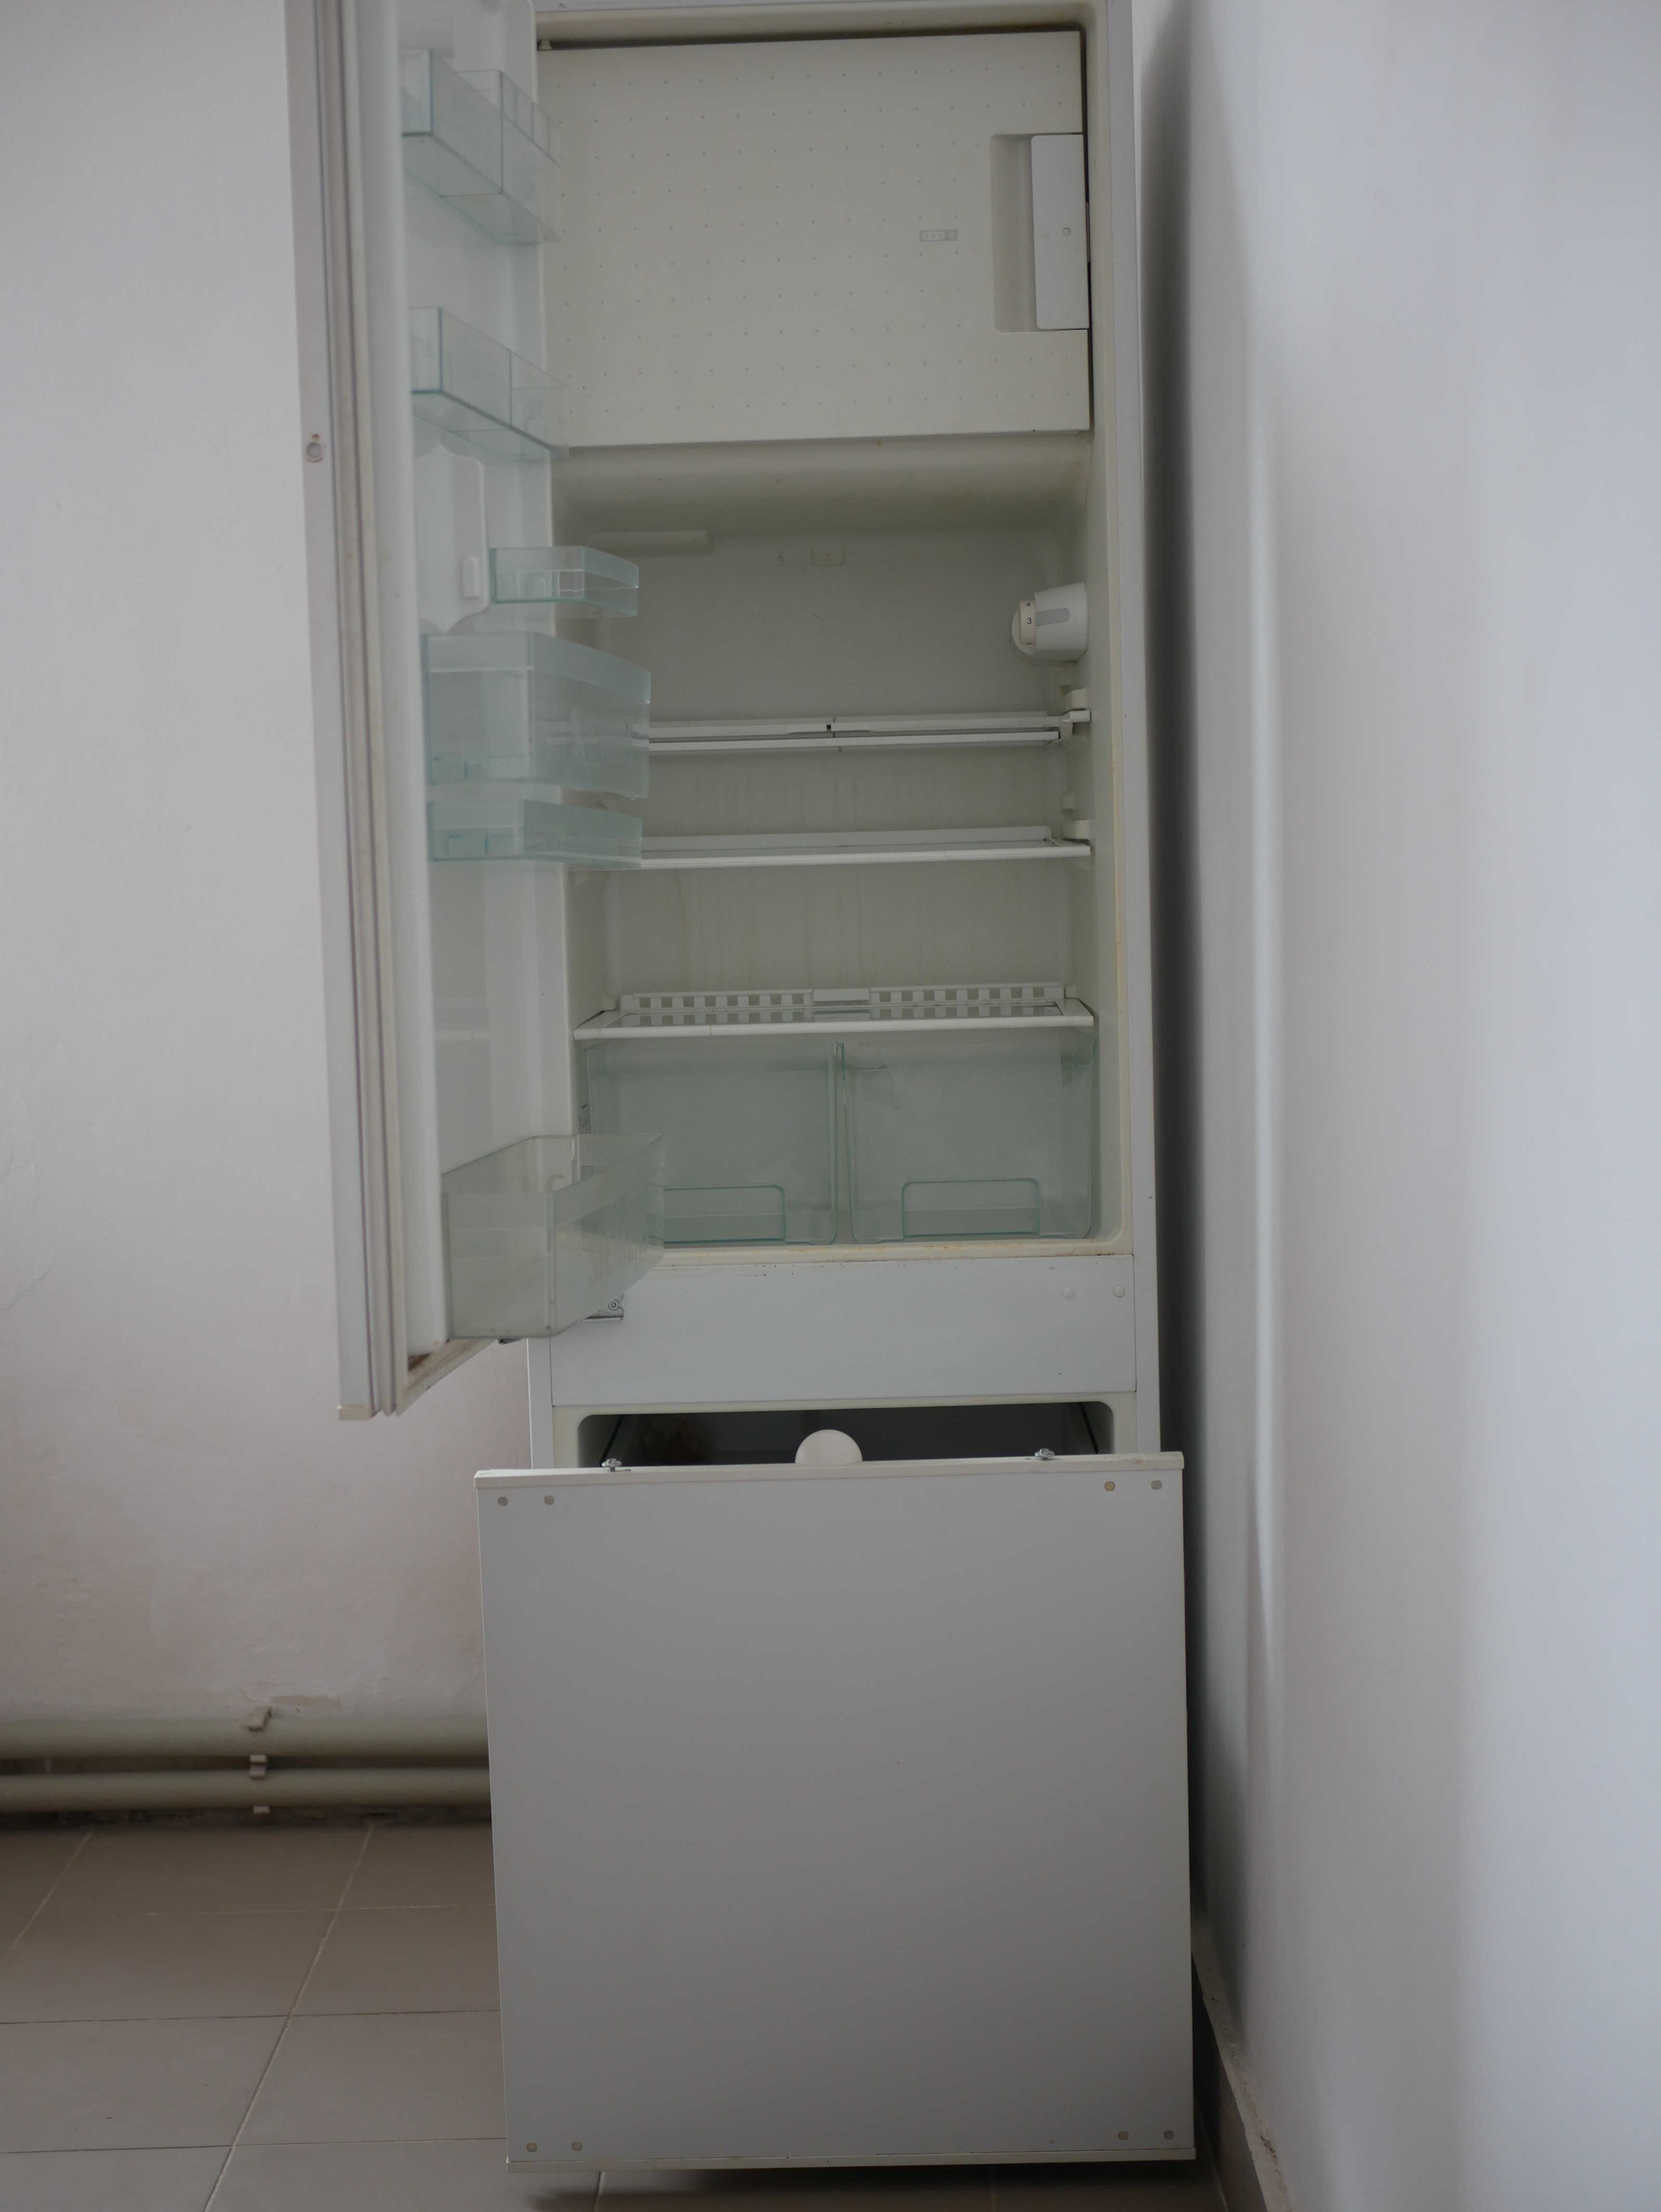 Холодильник Siemens KI32C40